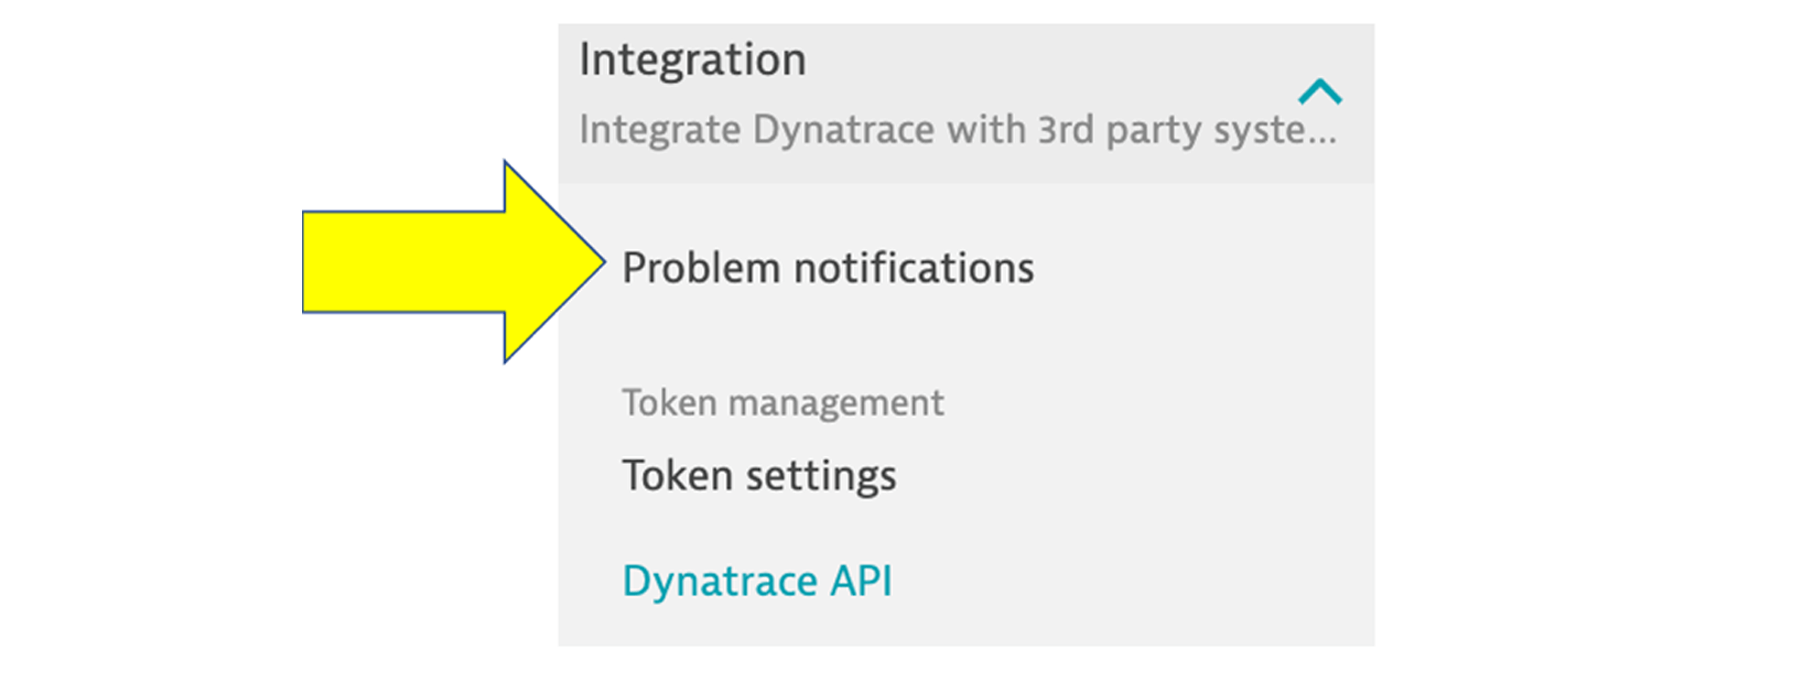 Problem notifications under "integration" in left side nav